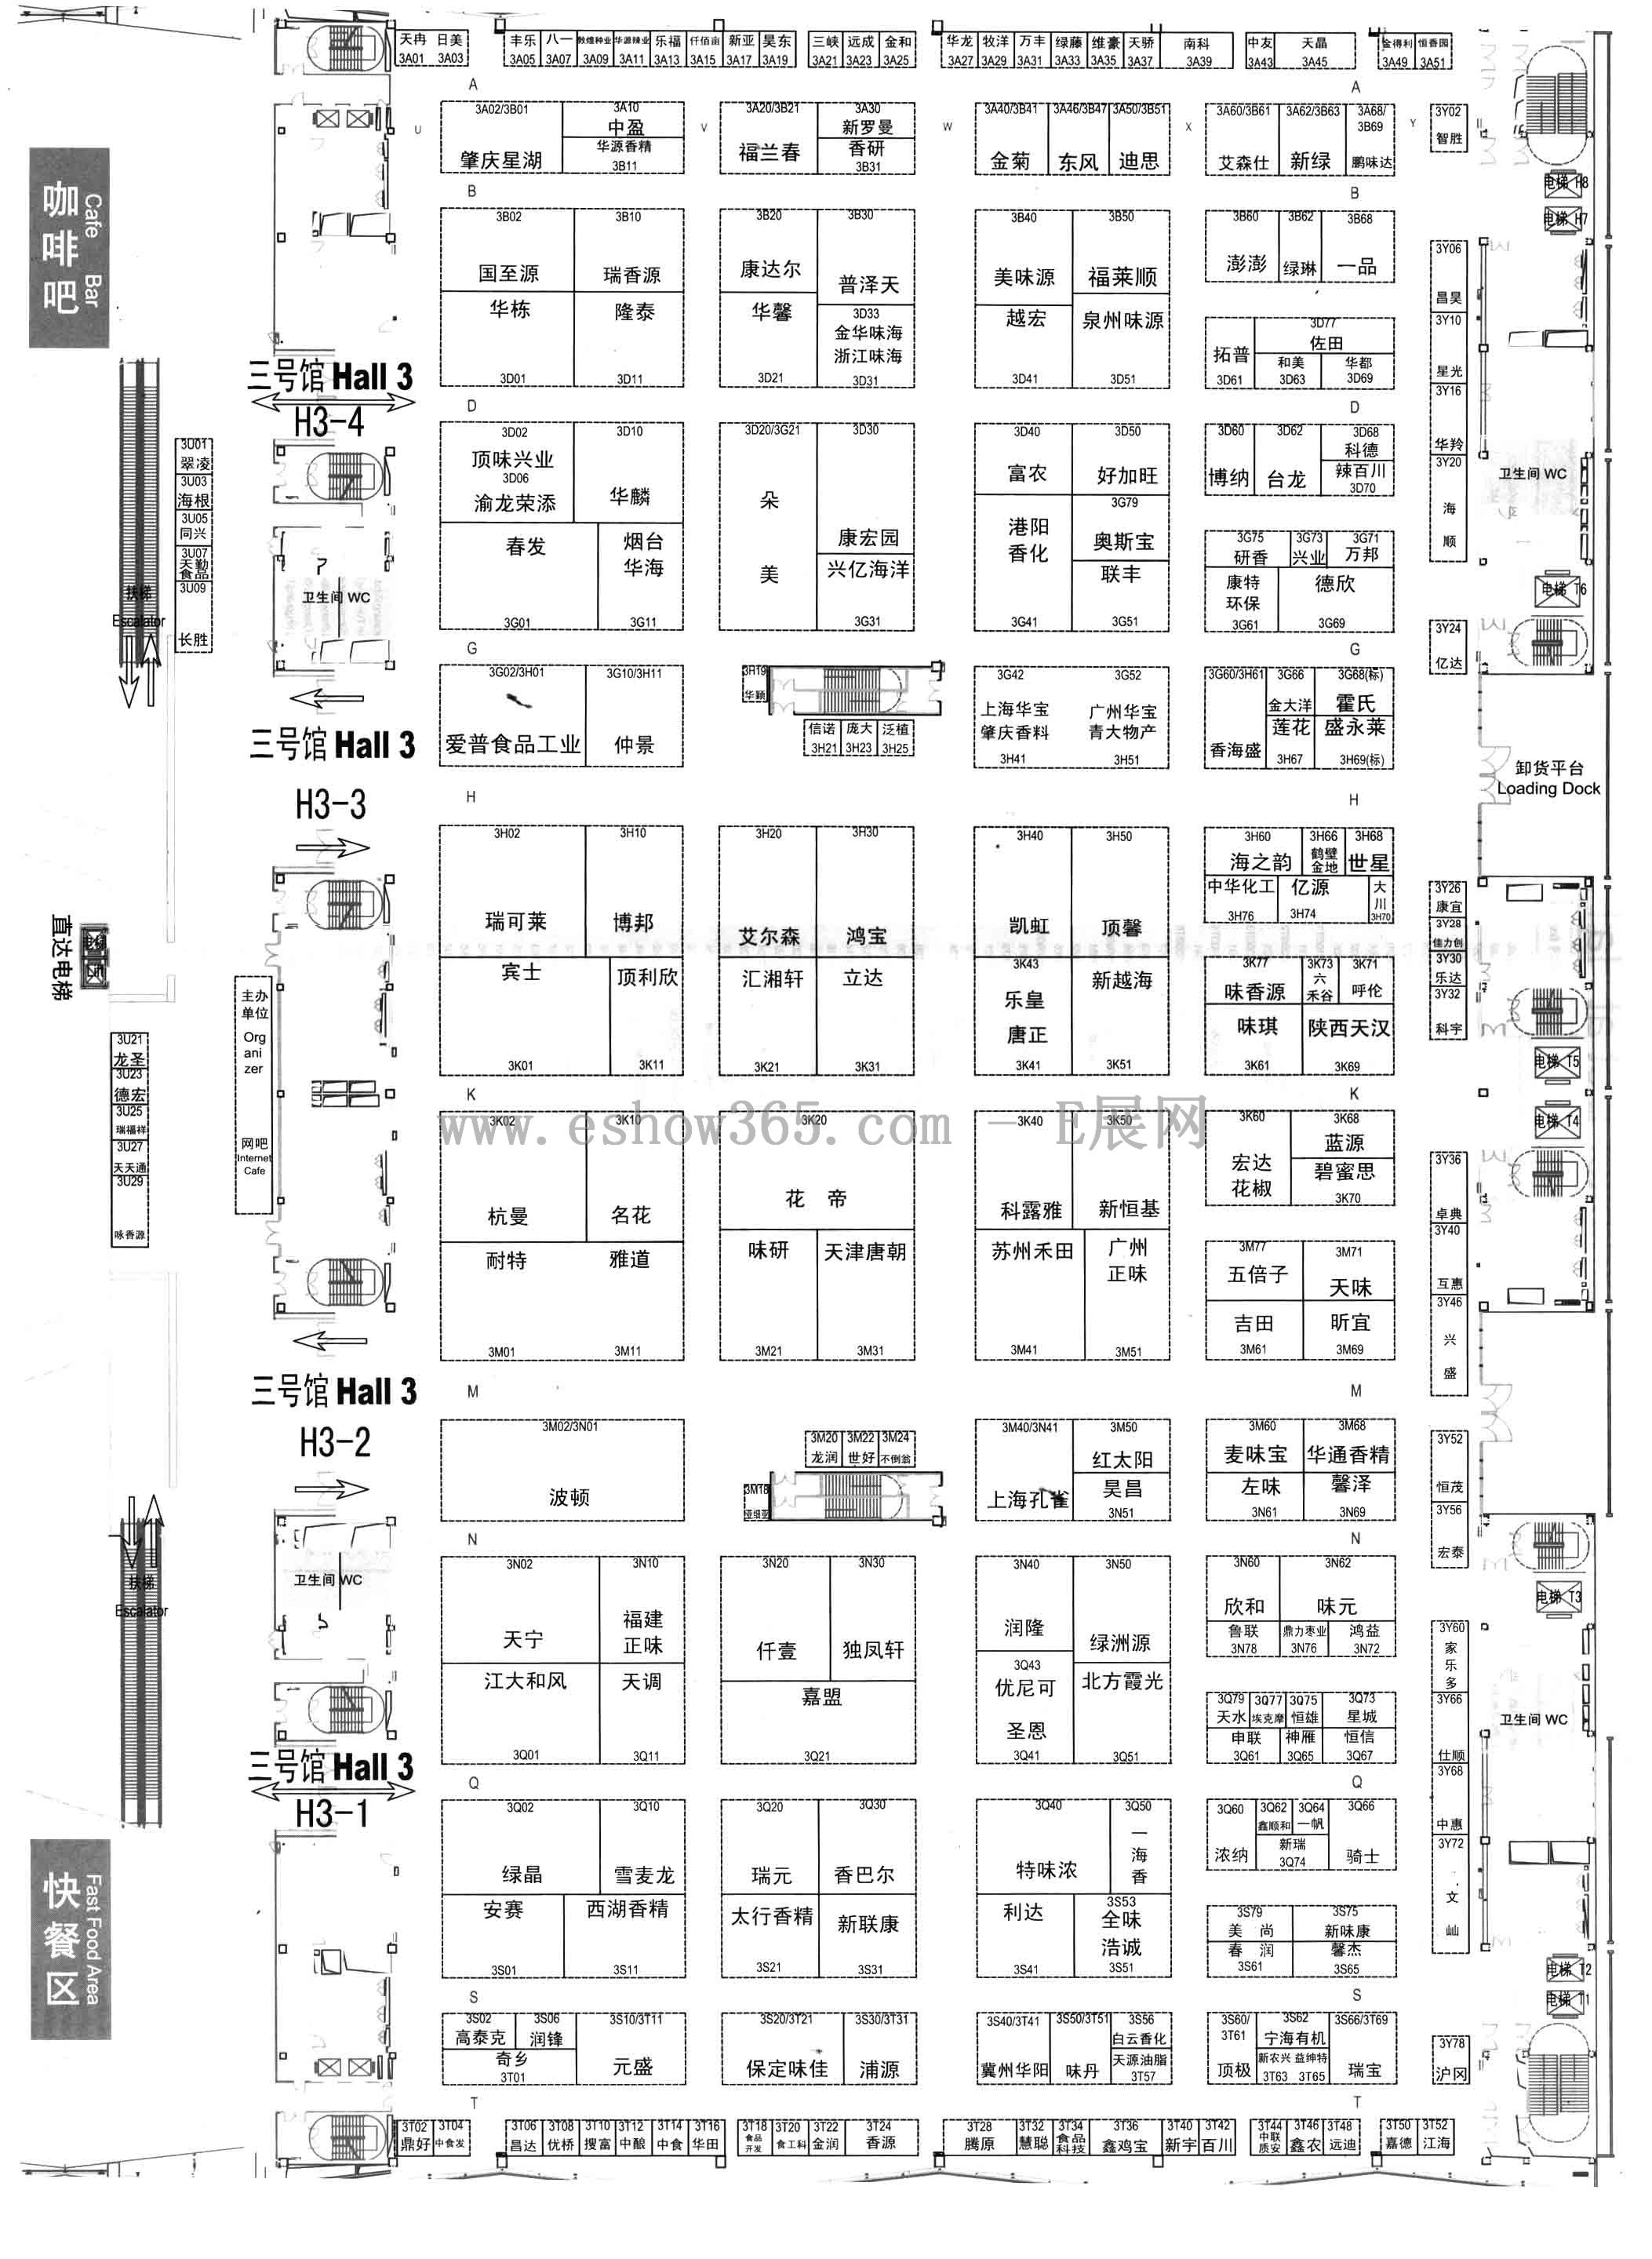 2013第十七届中国国际食品添加剂和配料展览会暨第二十三届全国食品添加剂生产应用技术展示会的平面图